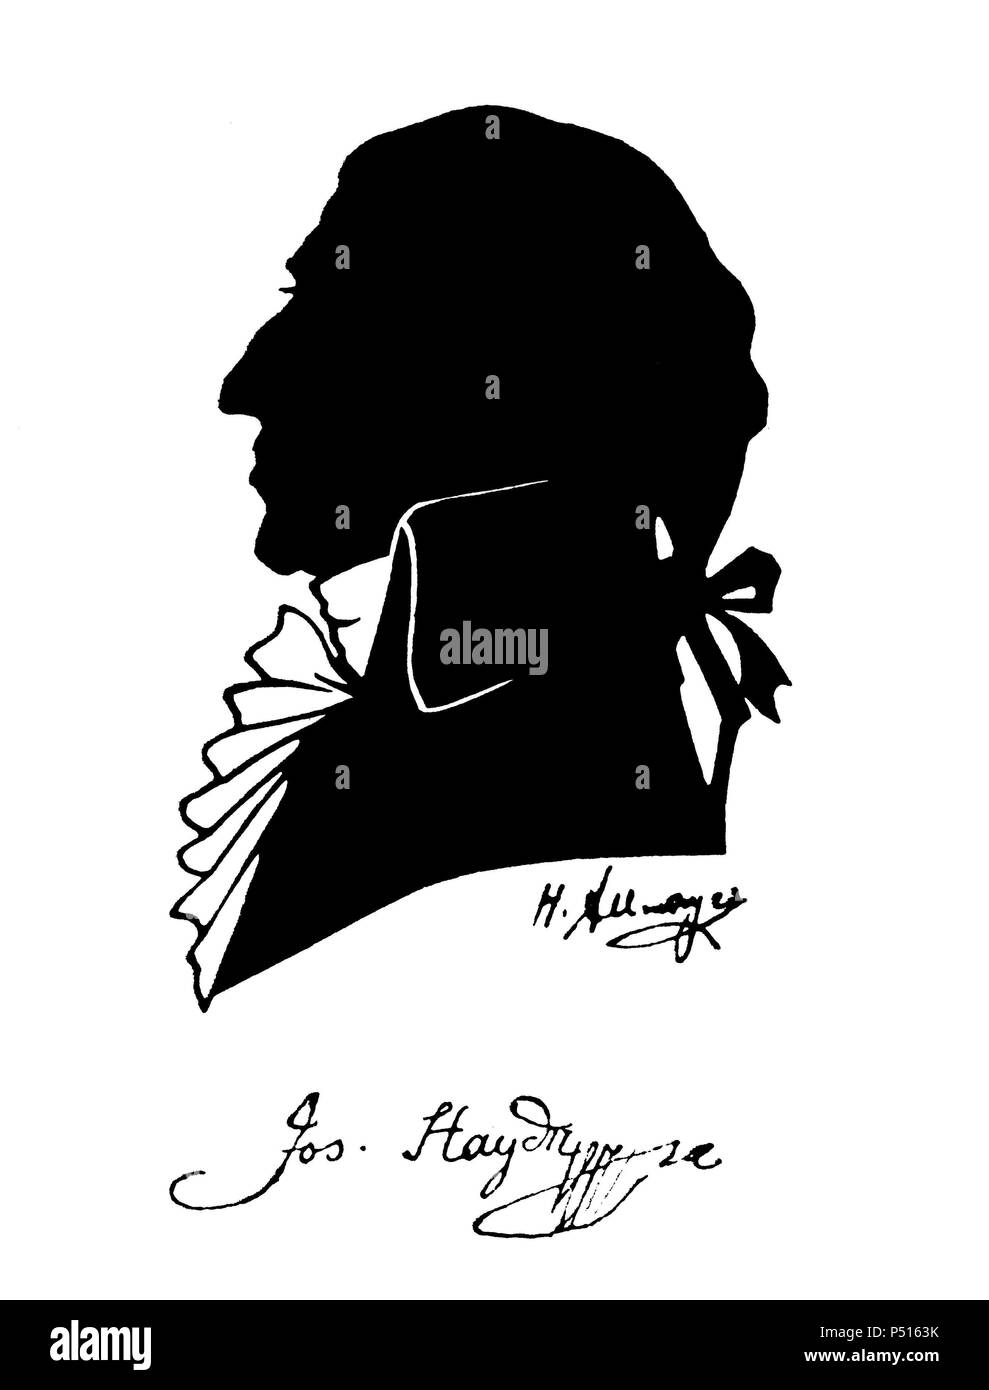 Franz Joseph Haydn (Rohrau, 1732-1809), Viena. Le compositeur y director de orquesta autríaco. Fue maestro de Beethoven. Banque D'Images